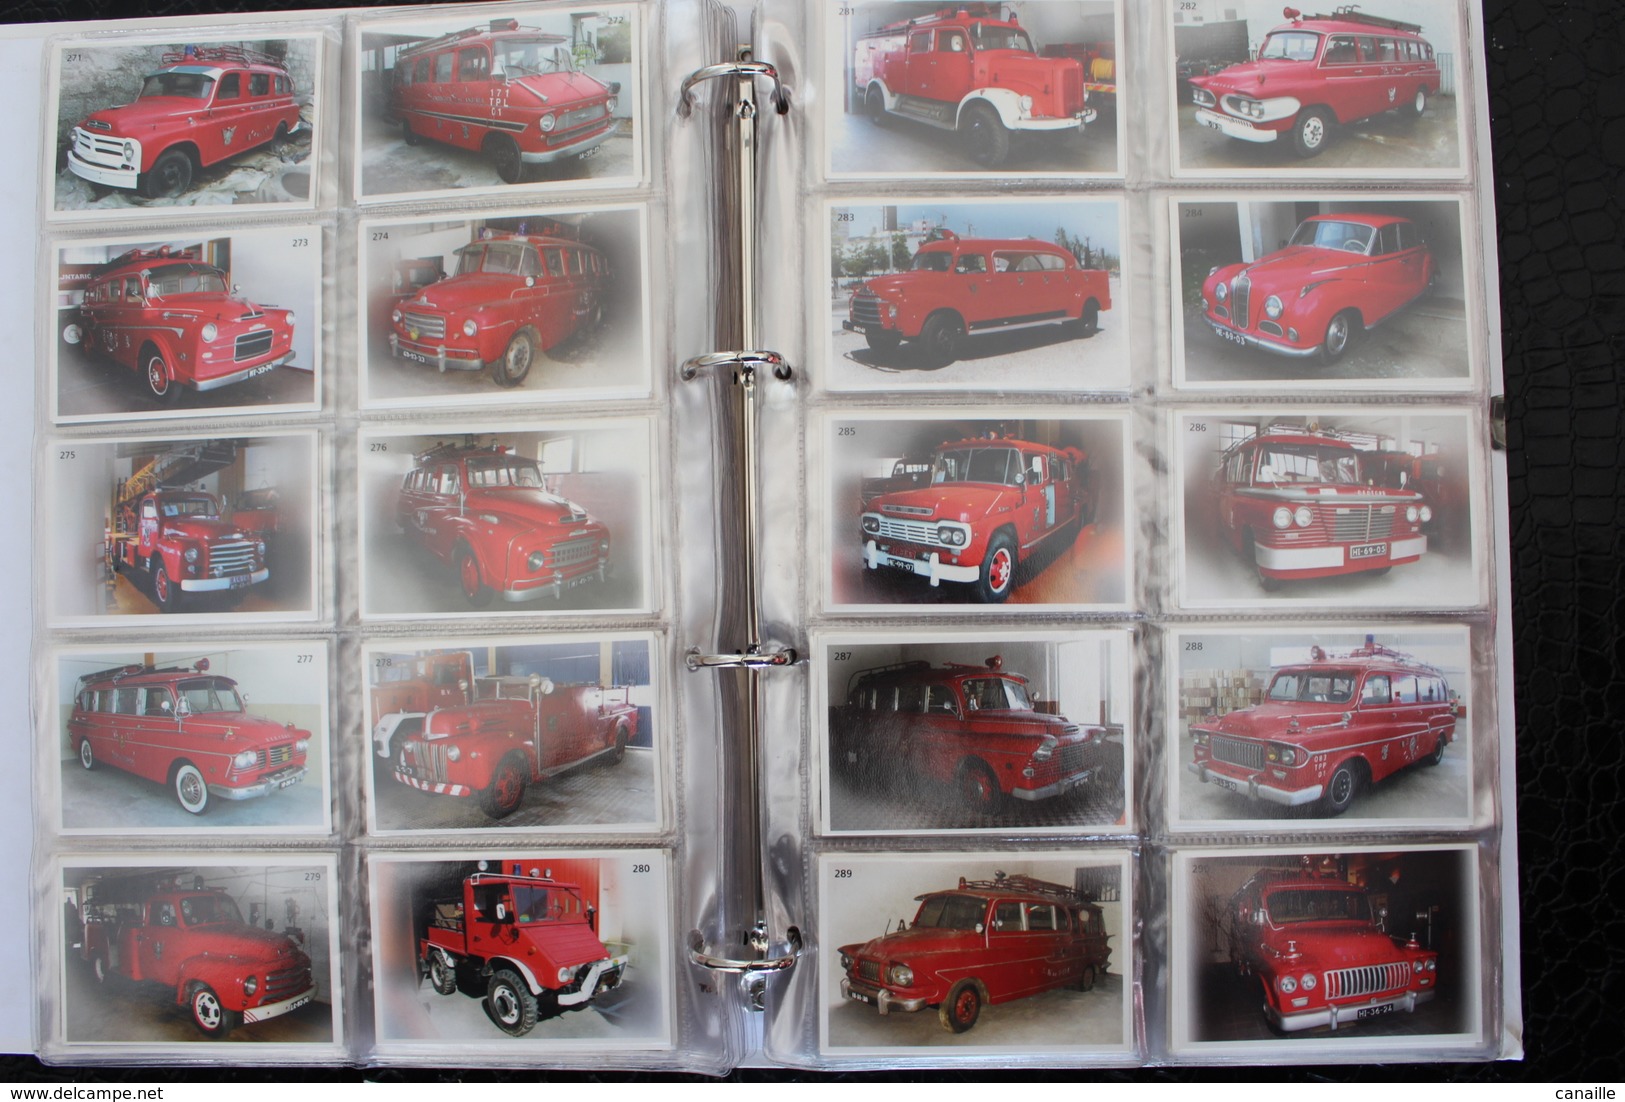 639 Photos de camions de pompiers du Portugal - Album ​complet / Coleccao de Viaturas dos Bombeiros Portugueses /2004